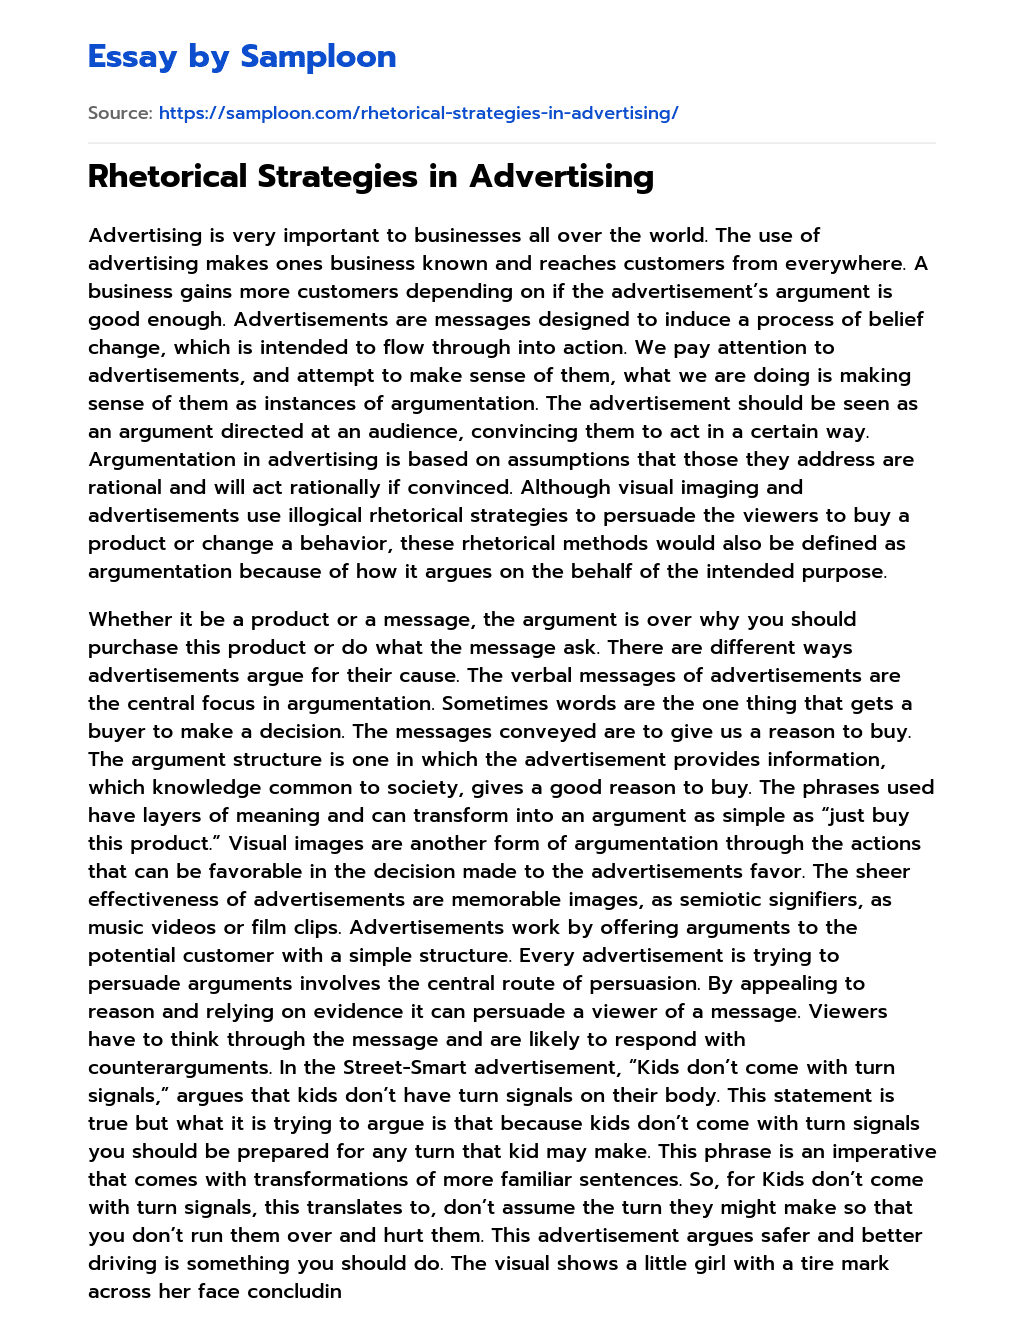 Rhetorical Strategies in Advertising essay